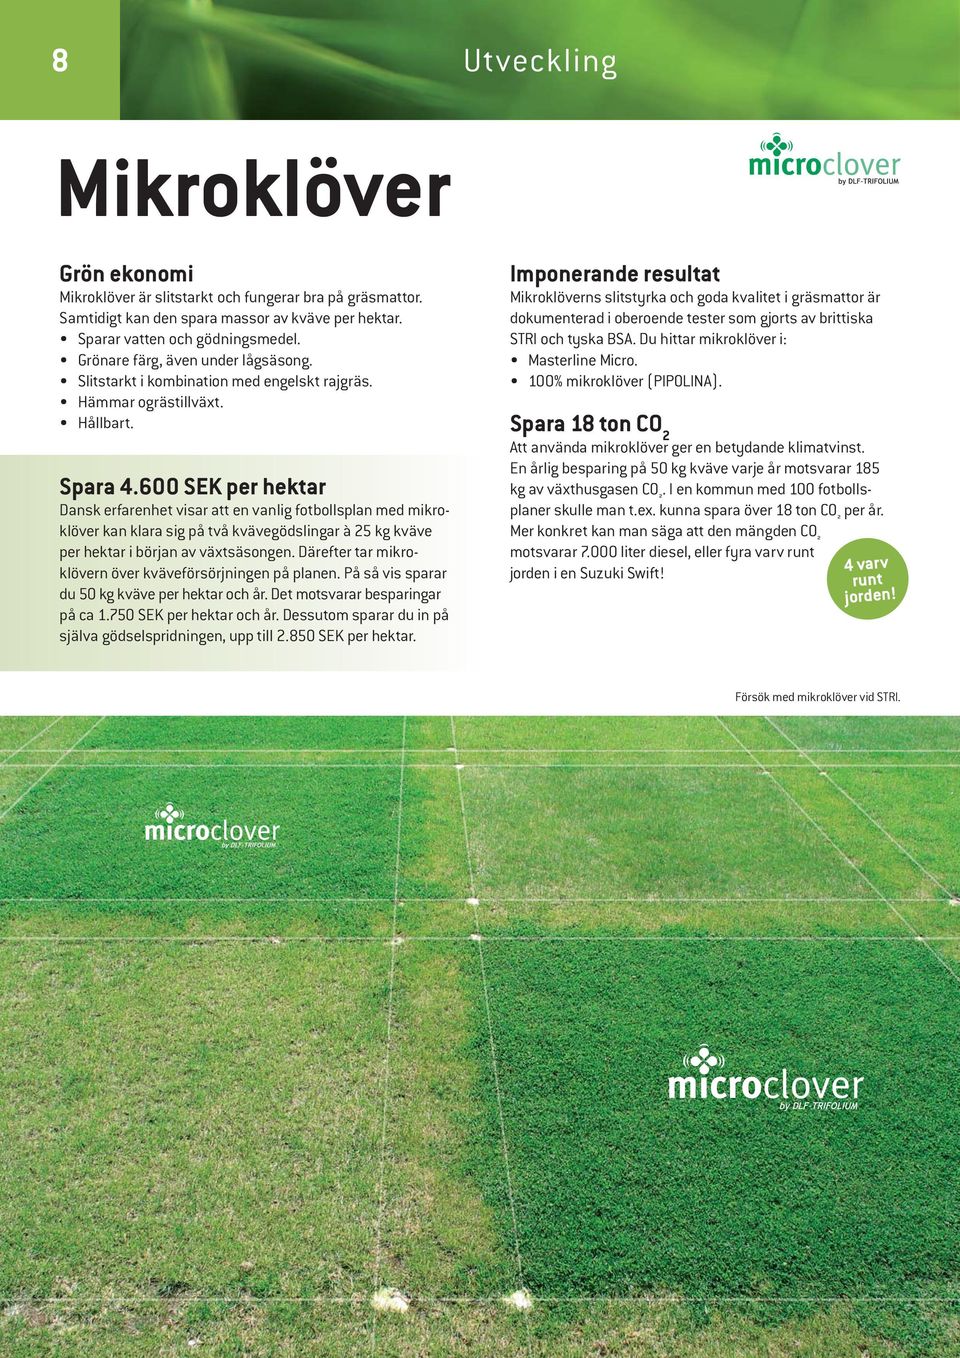 600 SEK per hektar Dansk erfarenhet visar att en vanlig fotbollsplan med mikroklöver kan klara sig på två kvävegödslingar à 25 kg kväve per hektar i början av växtsäsongen.